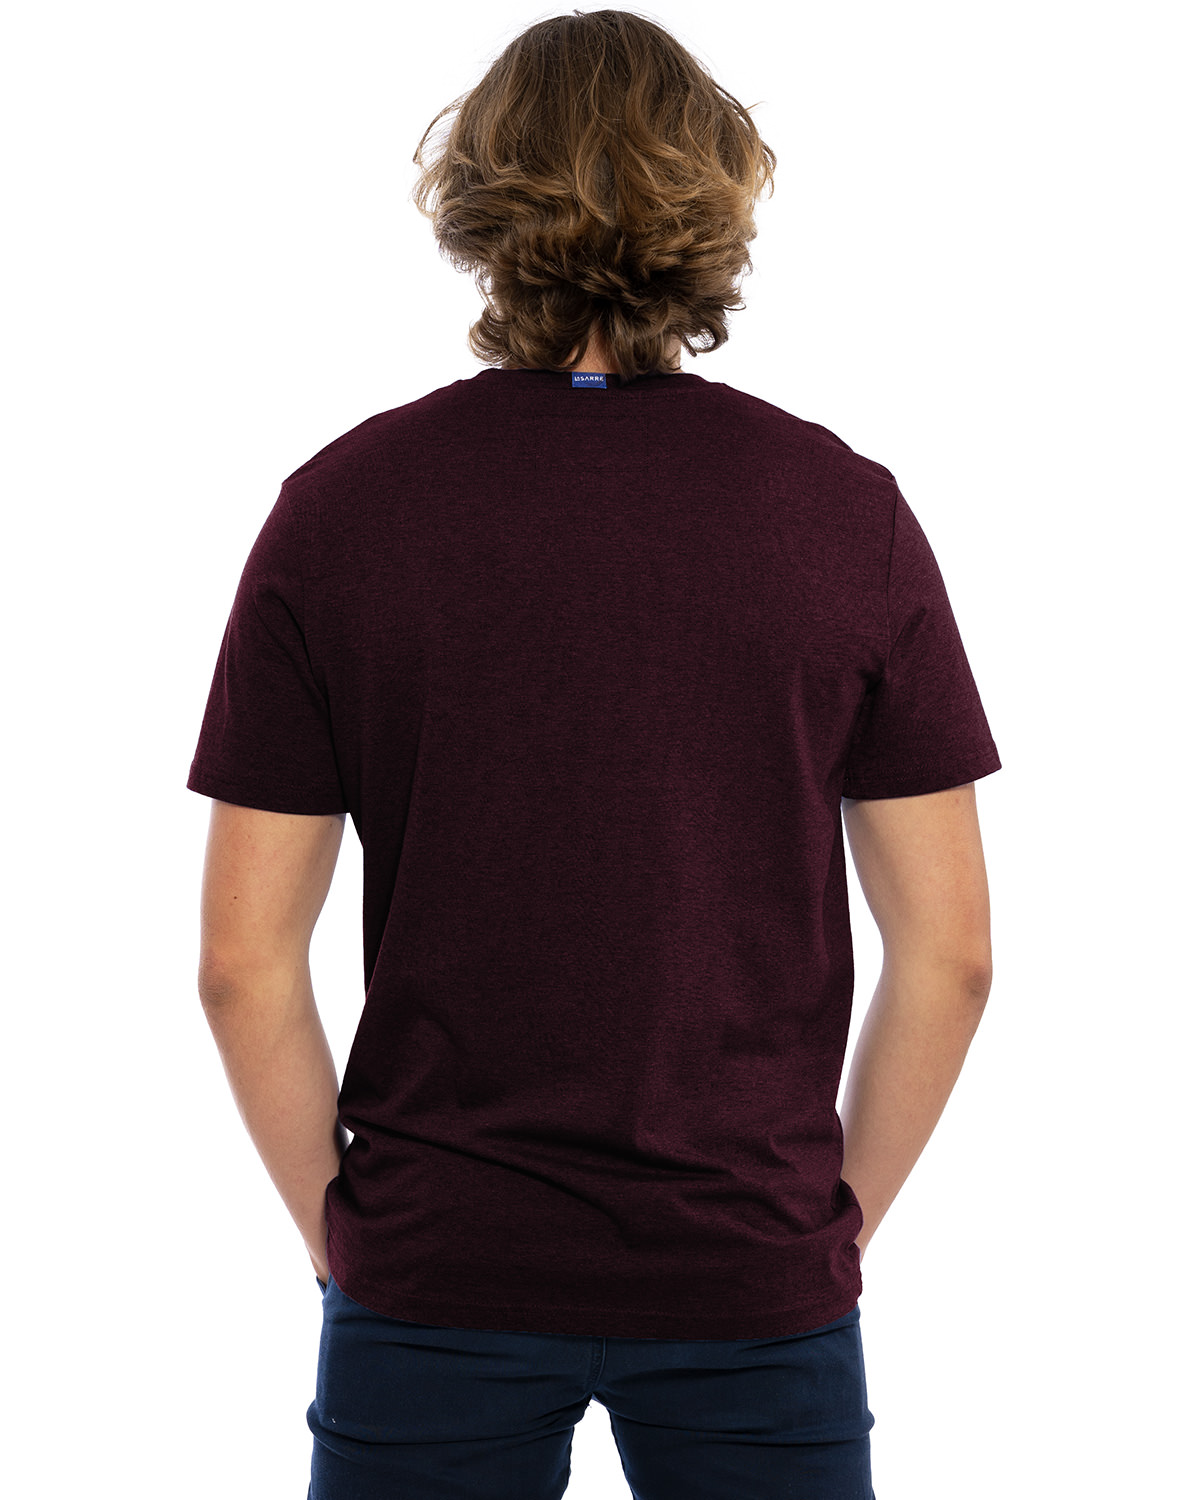 Rücken-Ansicht des hochwertig bestickten Männer T-Shirt „MORITZ“ in der dunkelroten besonderen Farbe Rubin von der Saarland Marke Lasarre mit dem LASARRE Wappen in Blau, Weiß, Rot auf der linken Brust und dem blauen LASARRE Markenzeichen am Saum